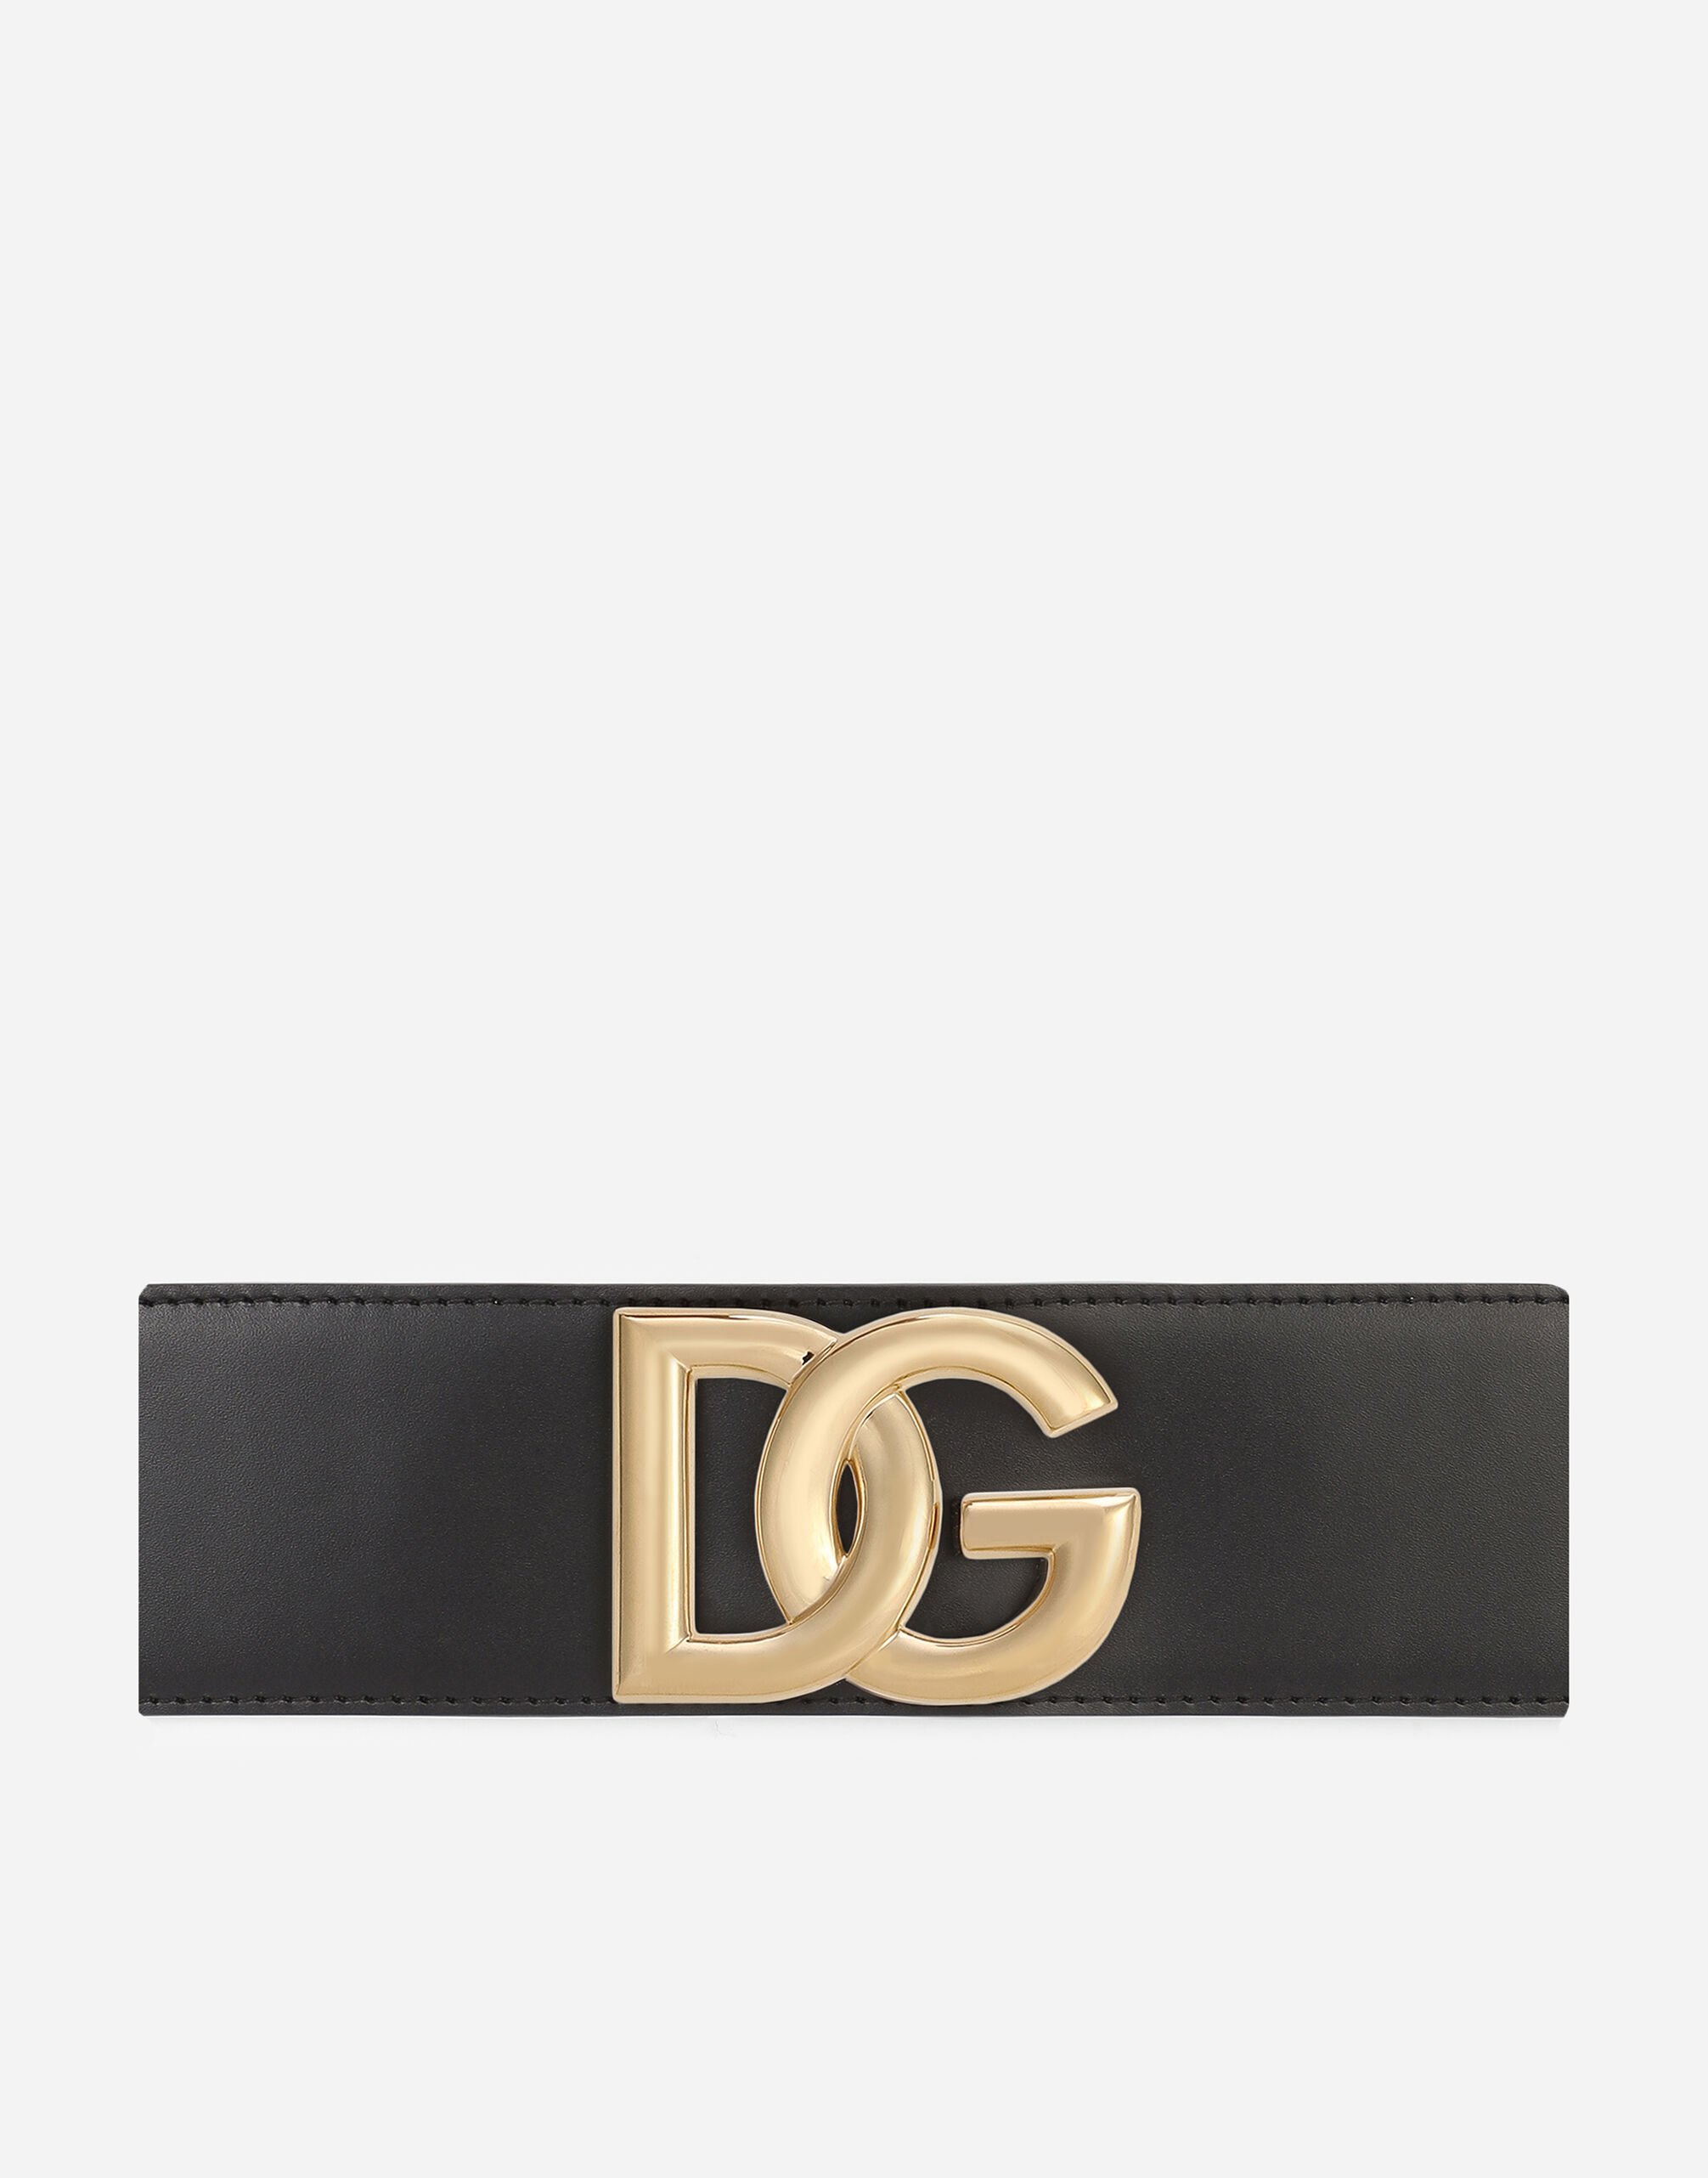 Dolce & Gabbana Cinturón en cuero lux y de banda elástica con logotipo DG Blanco BB7082AW576